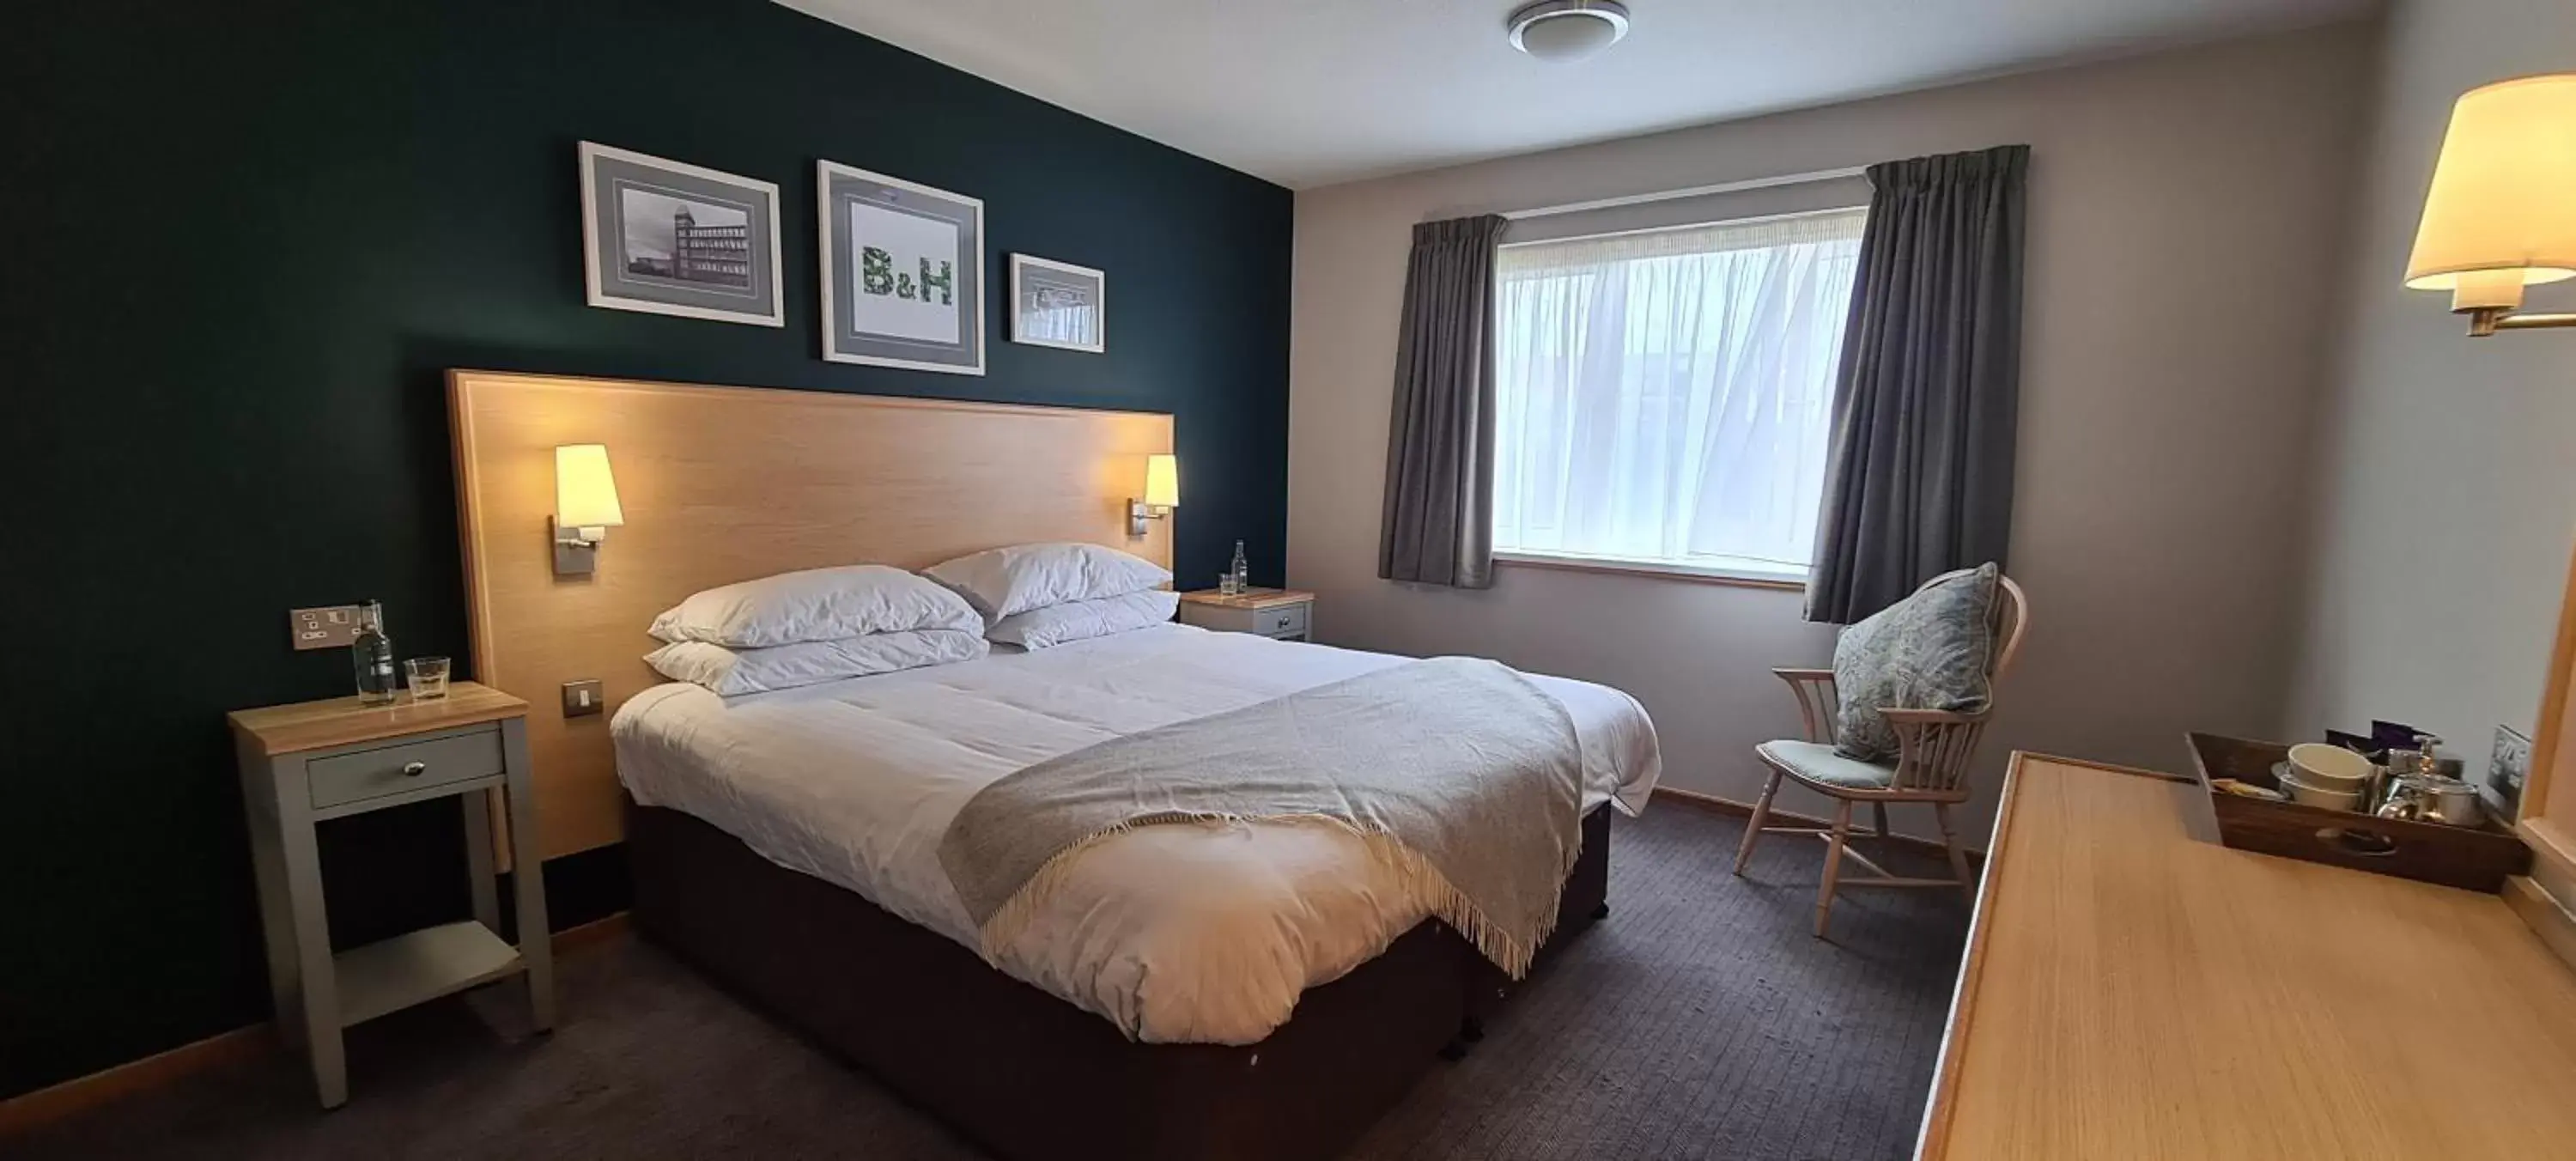 Bedroom, Bed in Boat & Horses Inn